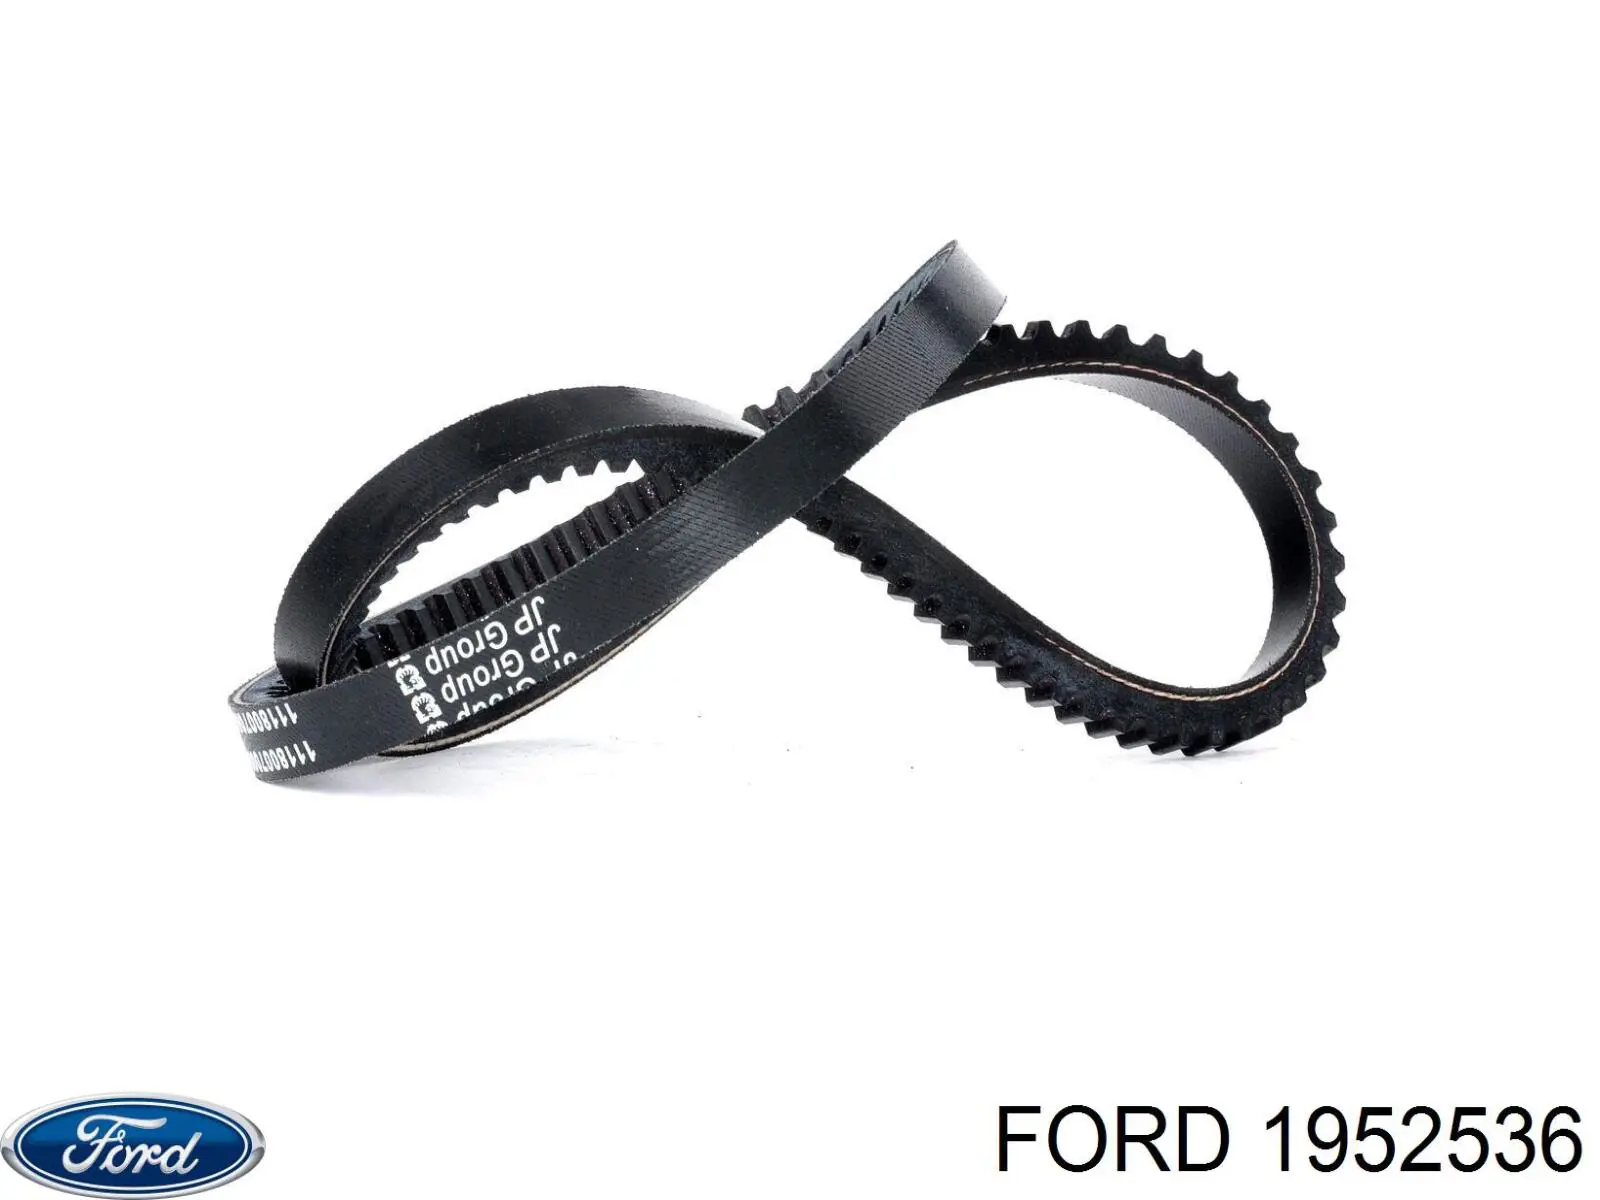 1952536 Ford correa trapezoidal